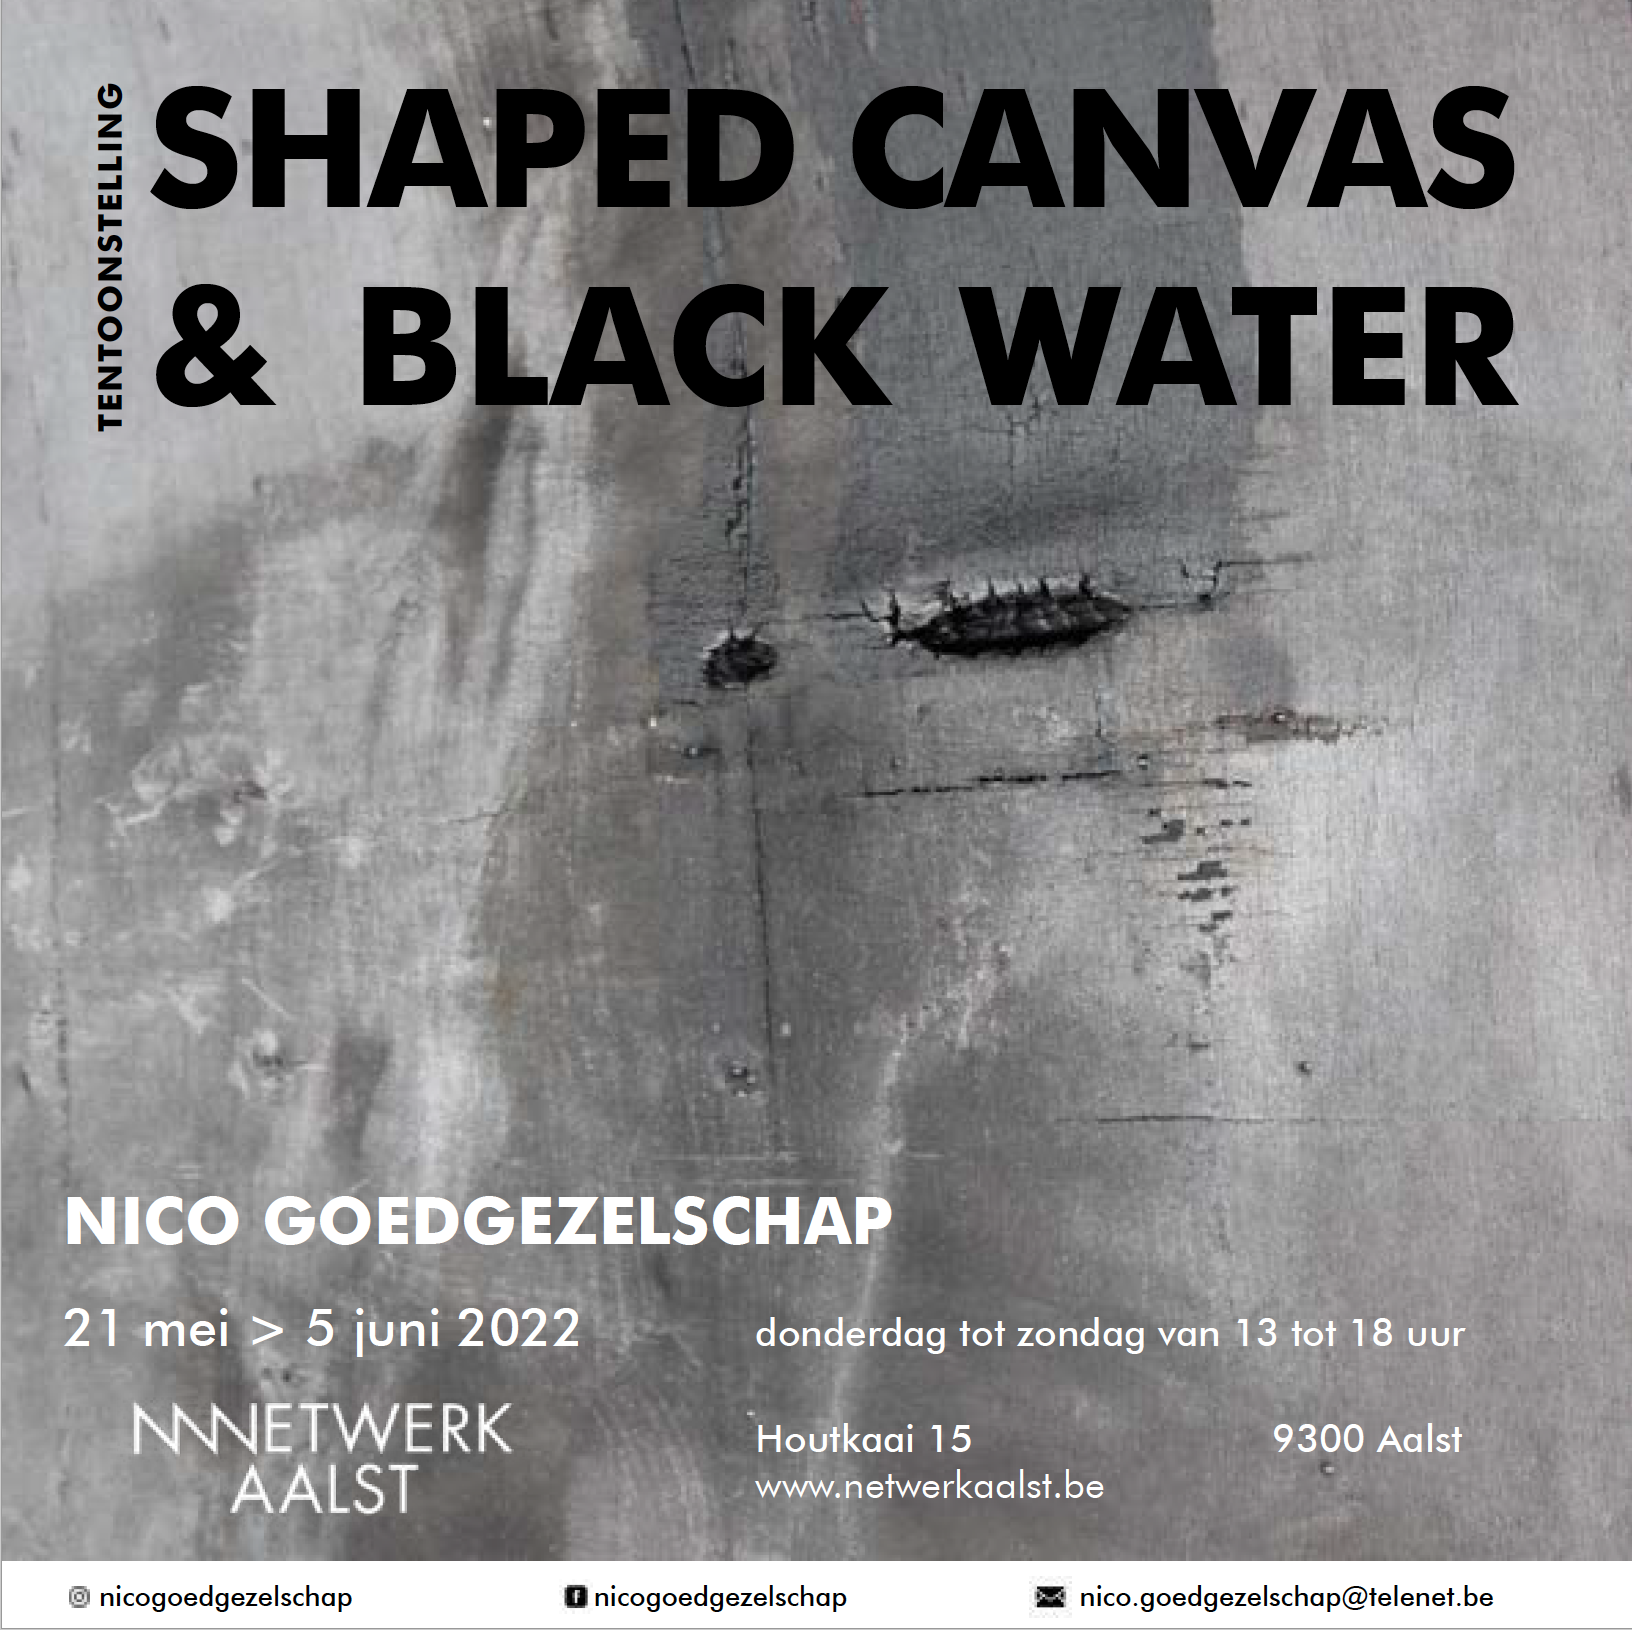 Tentoonstelling  "SHAPED CANVAS & BLACK WATER"  21 mei tot 5 juni, NetwerkAalst, door Nico Goedgezelschap